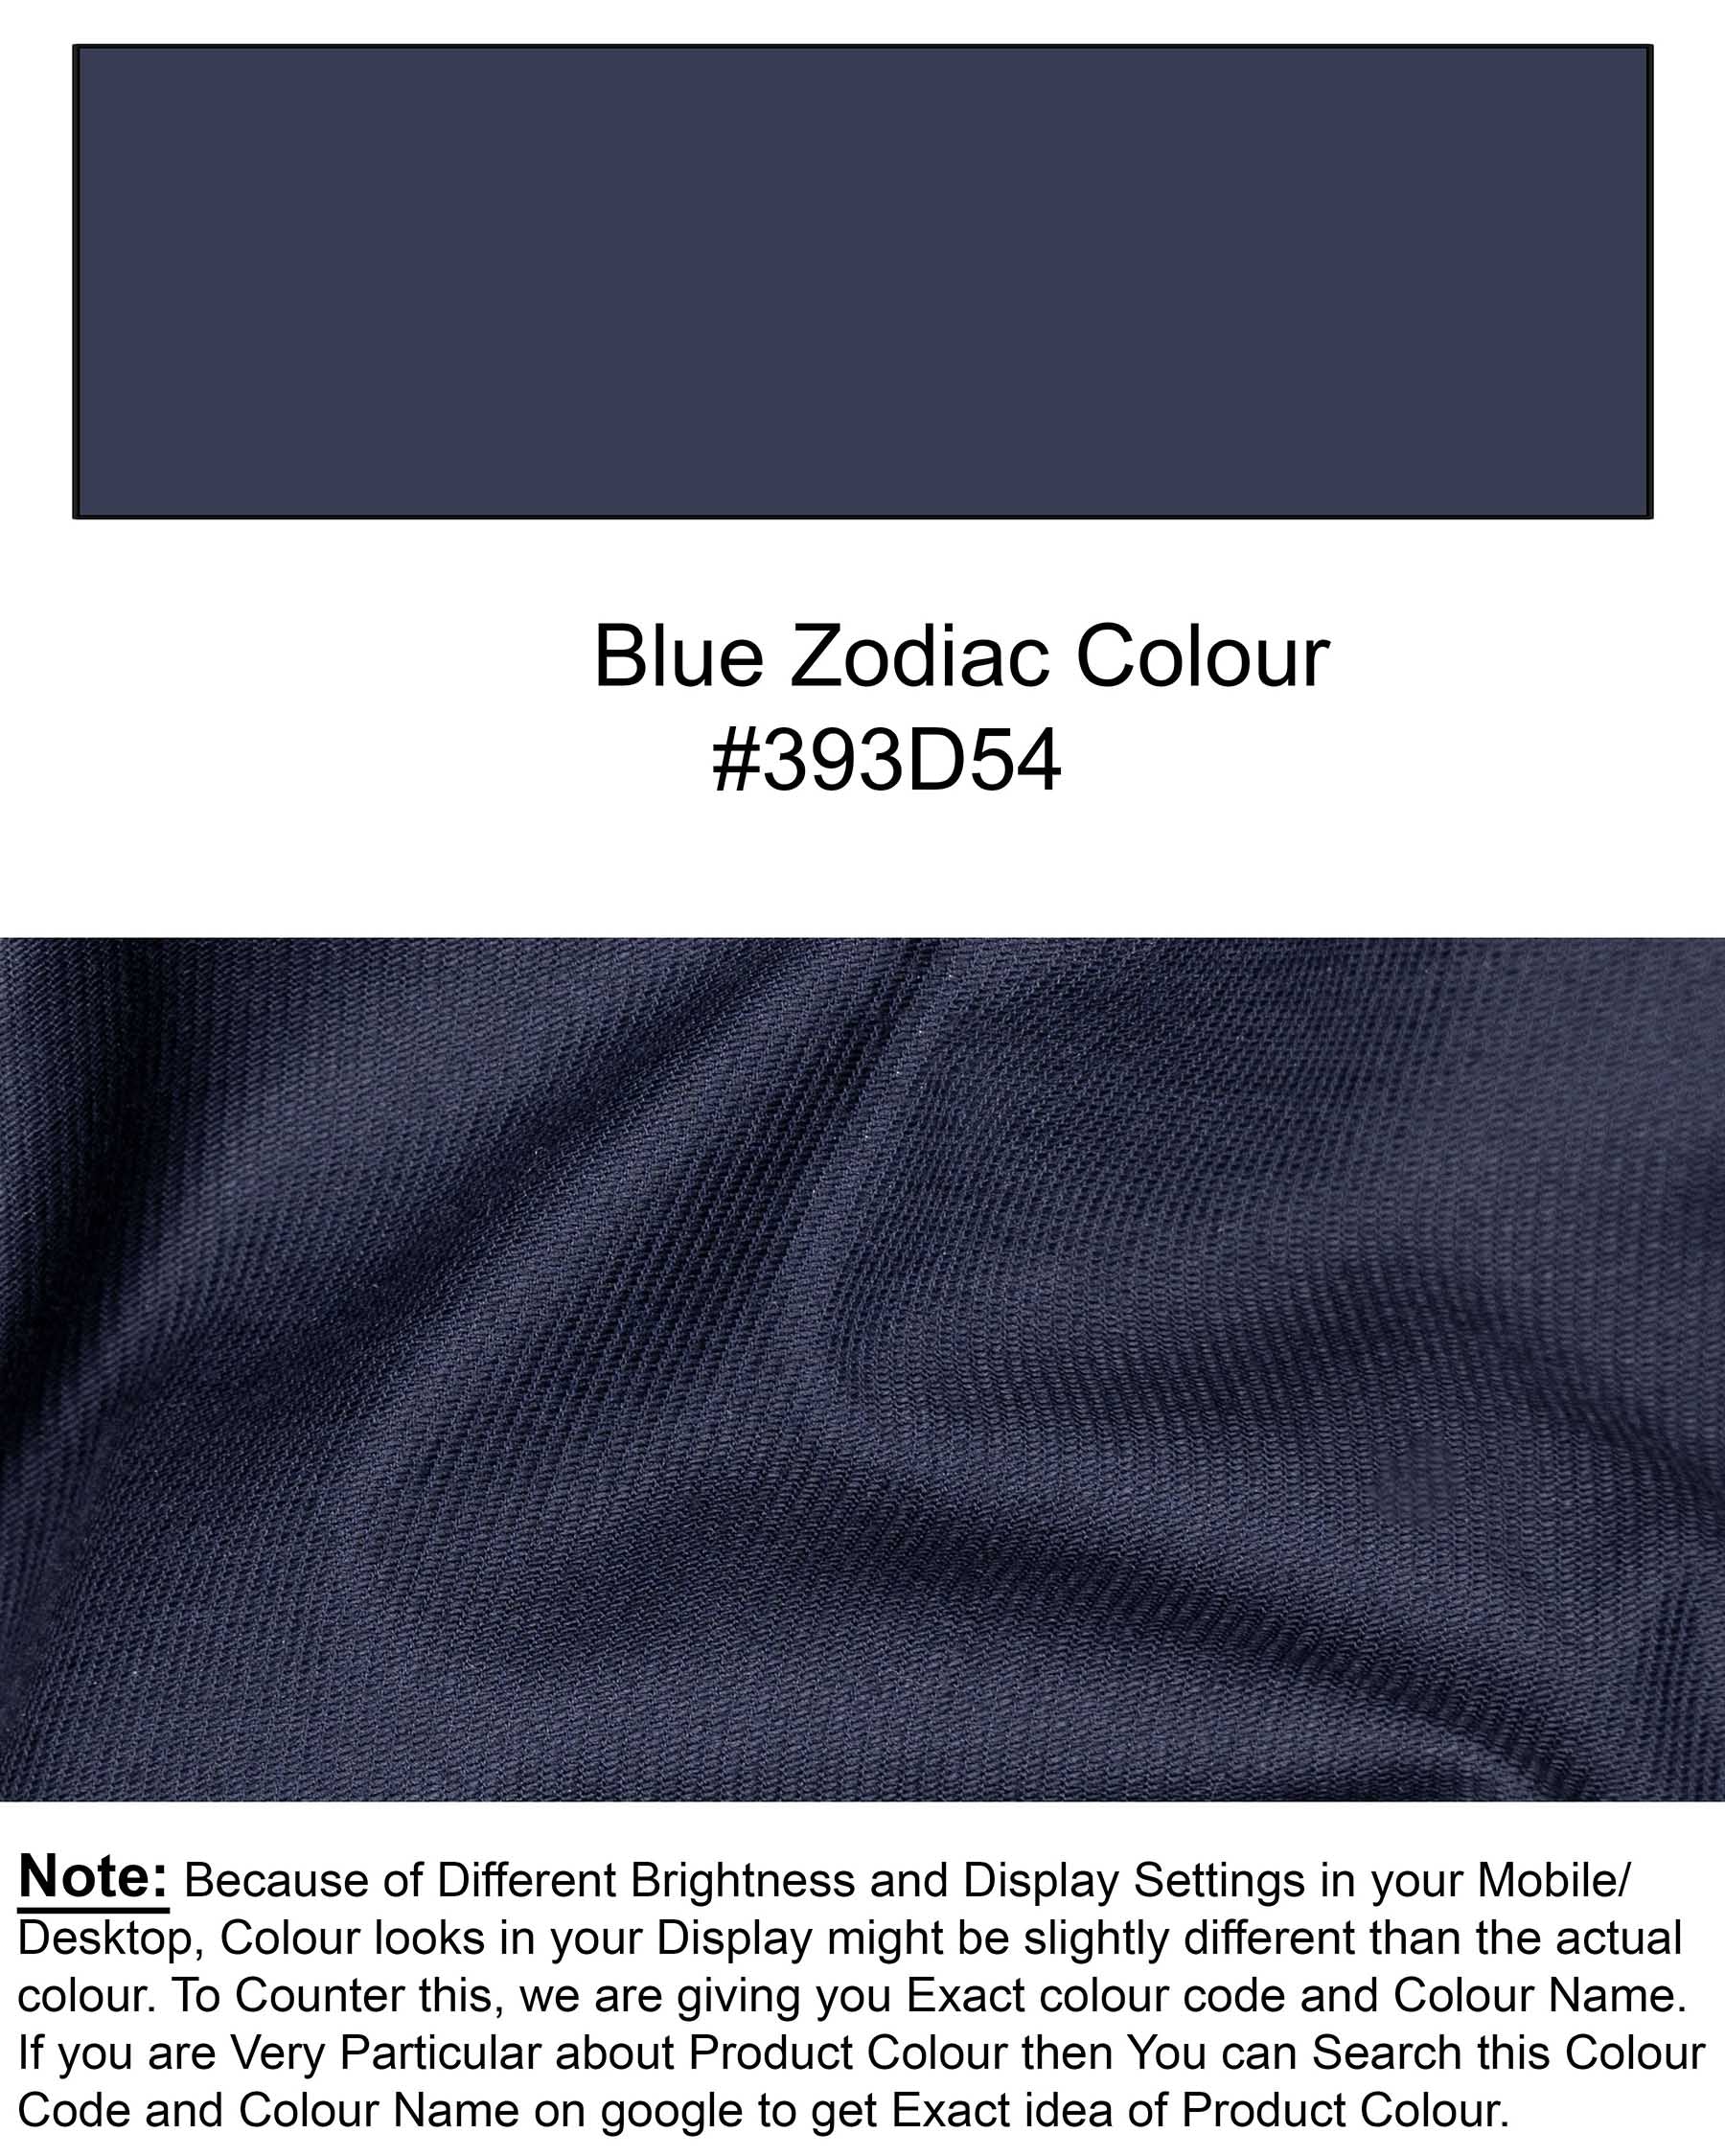 Blue Zodiac Royal Oxford Shirt 6107-BD-OS-38, 6107-BD-OS-H-38, 6107-BD-OS-39, 6107-BD-OS-H-39, 6107-BD-OS-40, 6107-BD-OS-H-40, 6107-BD-OS-42, 6107-BD-OS-H-42, 6107-BD-OS-44, 6107-BD-OS-H-44, 6107-BD-OS-46, 6107-BD-OS-H-46, 6107-BD-OS-48, 6107-BD-OS-H-48, 6107-BD-OS-50, 6107-BD-OS-H-50, 6107-BD-OS-52, 6107-BD-OS-H-52